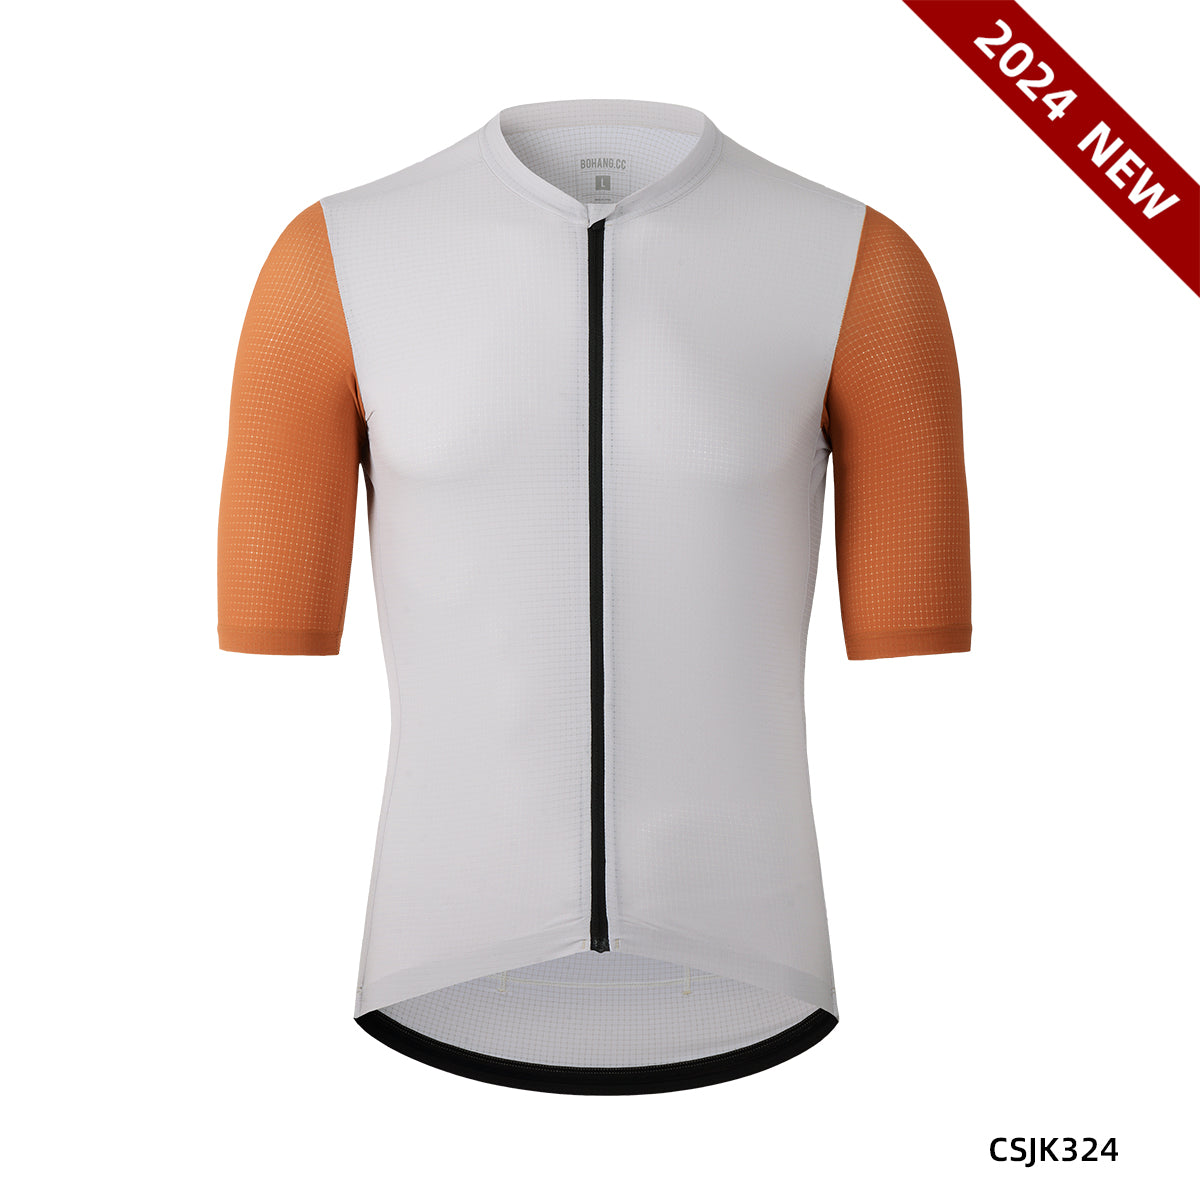 Men's woven cycling short sleeve jersey CSJK324